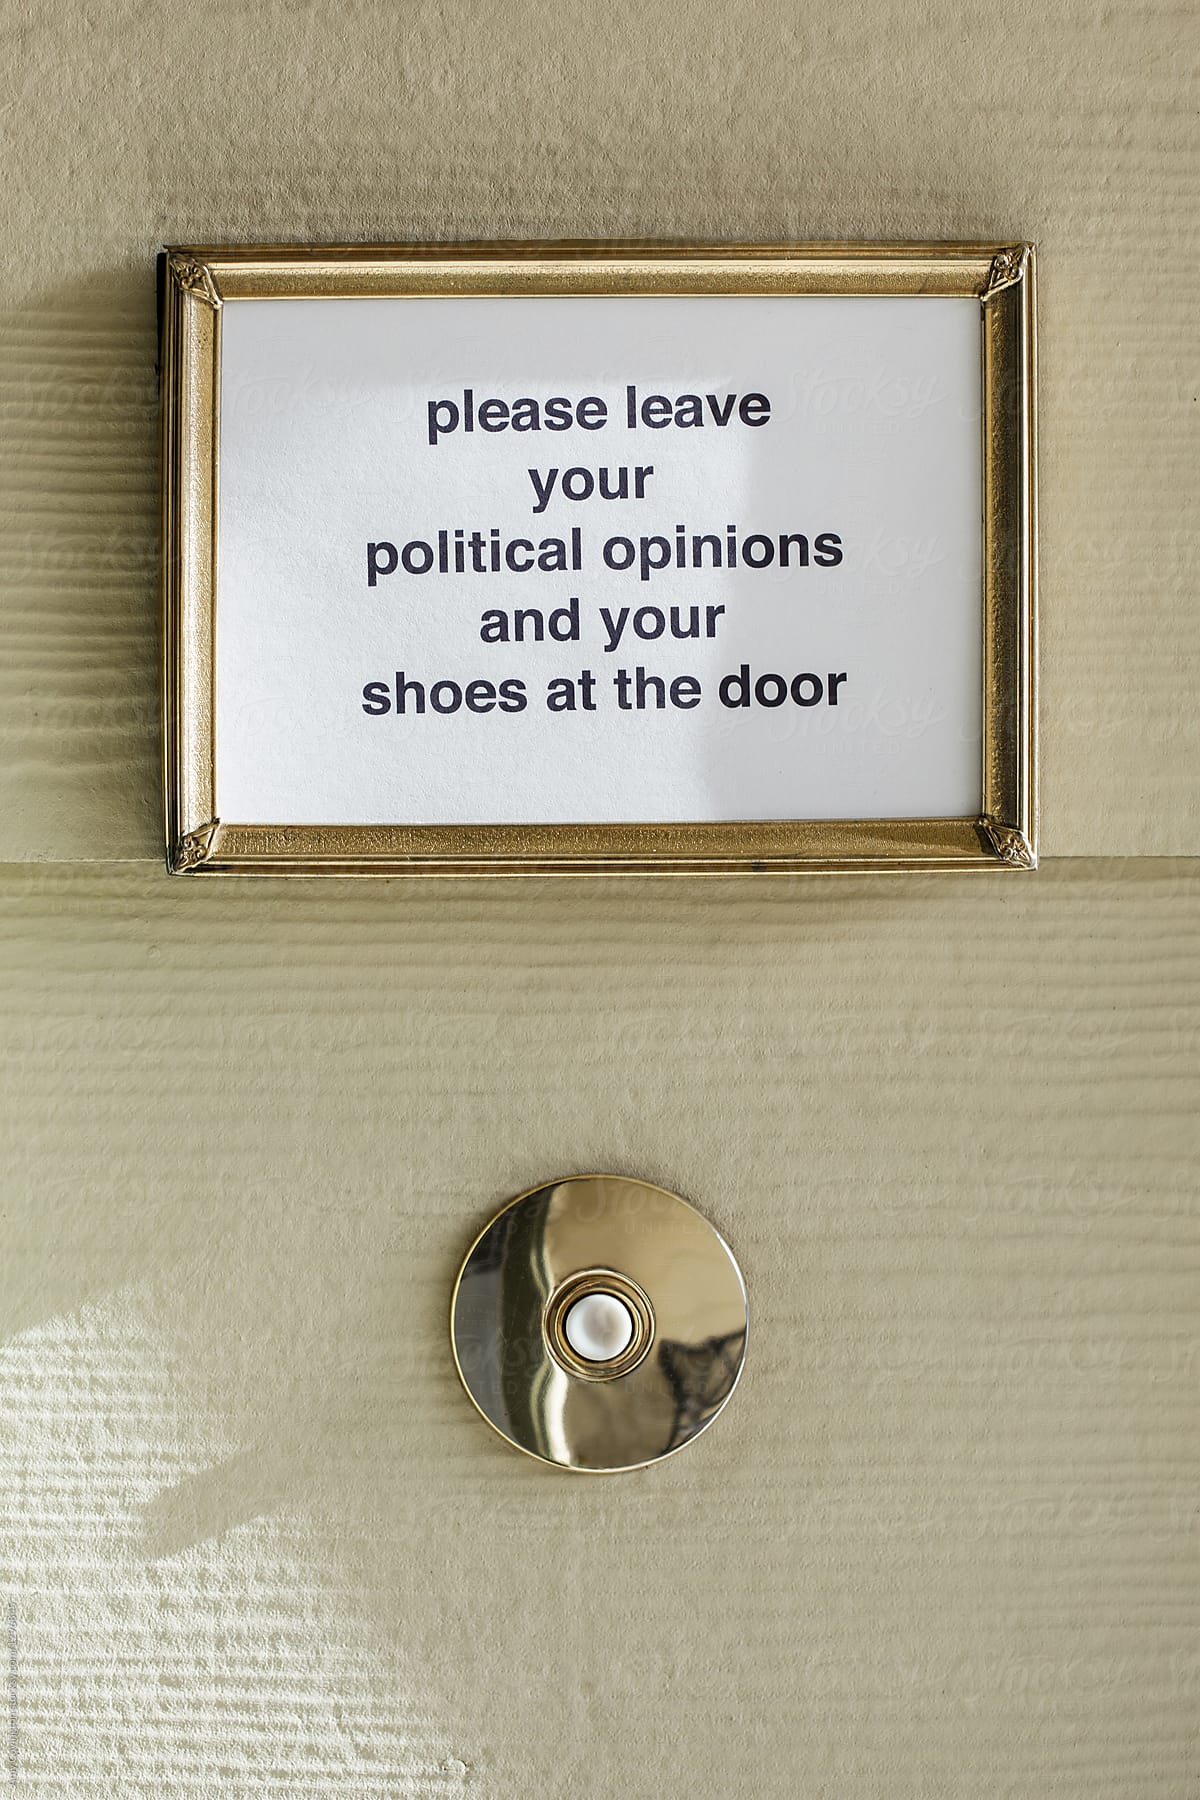 A political sign above a doorbell